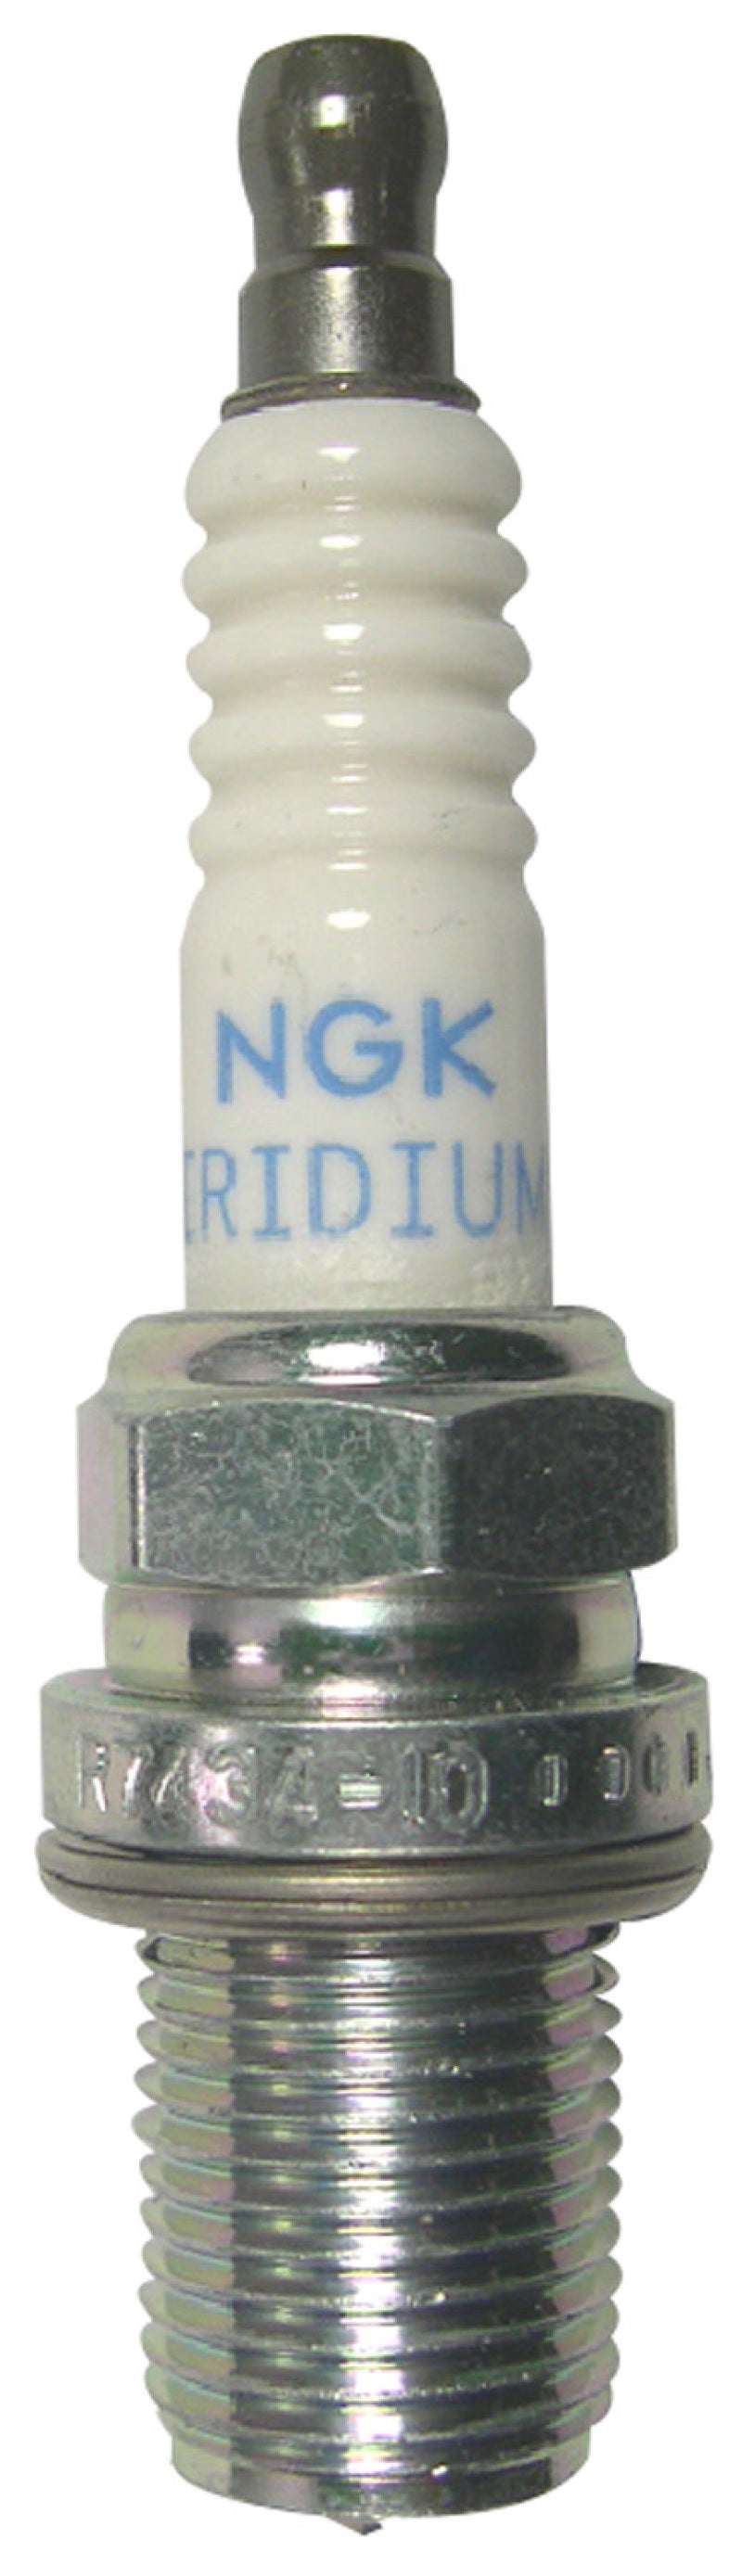 NGK Racing Spark Plug Box of 4 (R7434-10).